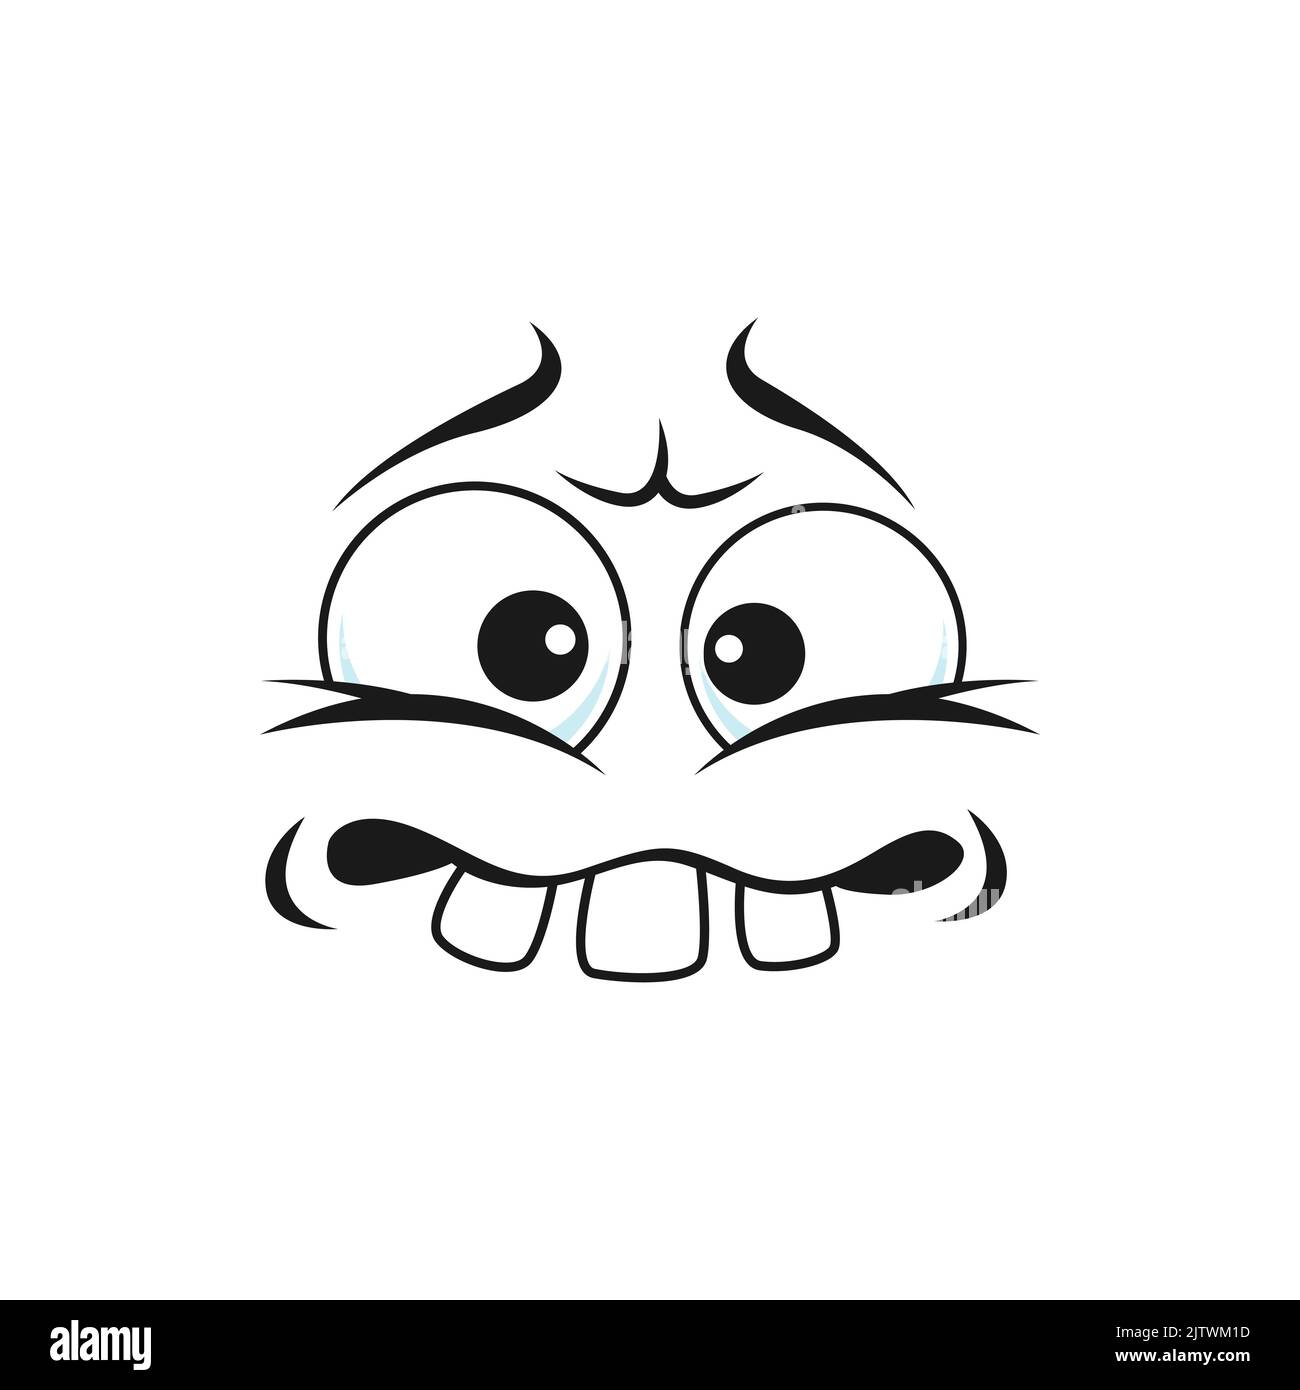 Cartoon faccia dentata, vettore disgruntled emoji facciali con bastone su denti. Creatura divertente, emozione confusa, personaggio comico con bocca toothy e occhi rotondi squinted isolato personaggio stupido Illustrazione Vettoriale